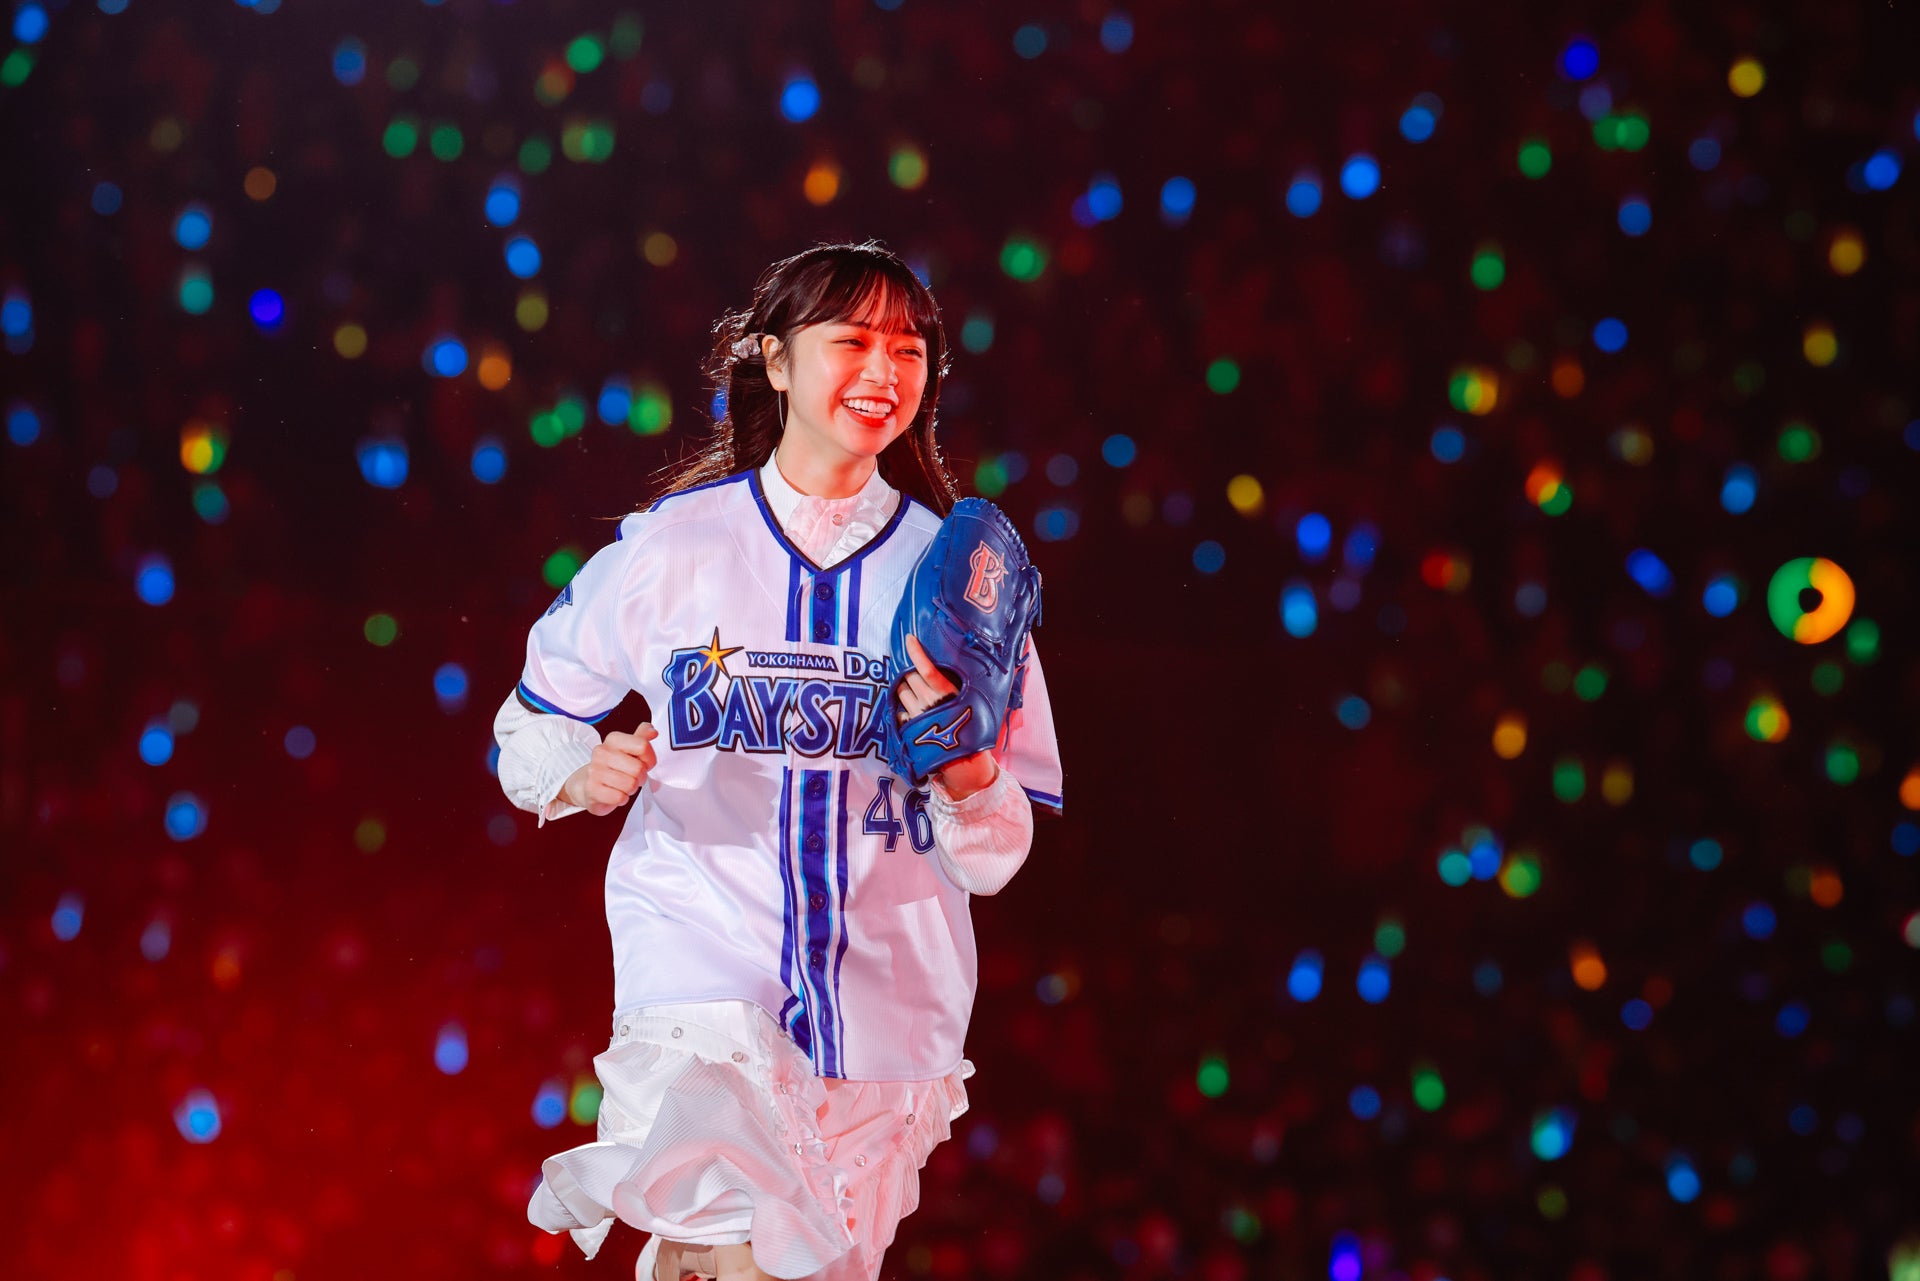 日向坂46 山口陽世 生写真 4回目のひな誕祭オープニング青衣装 セミコンプ